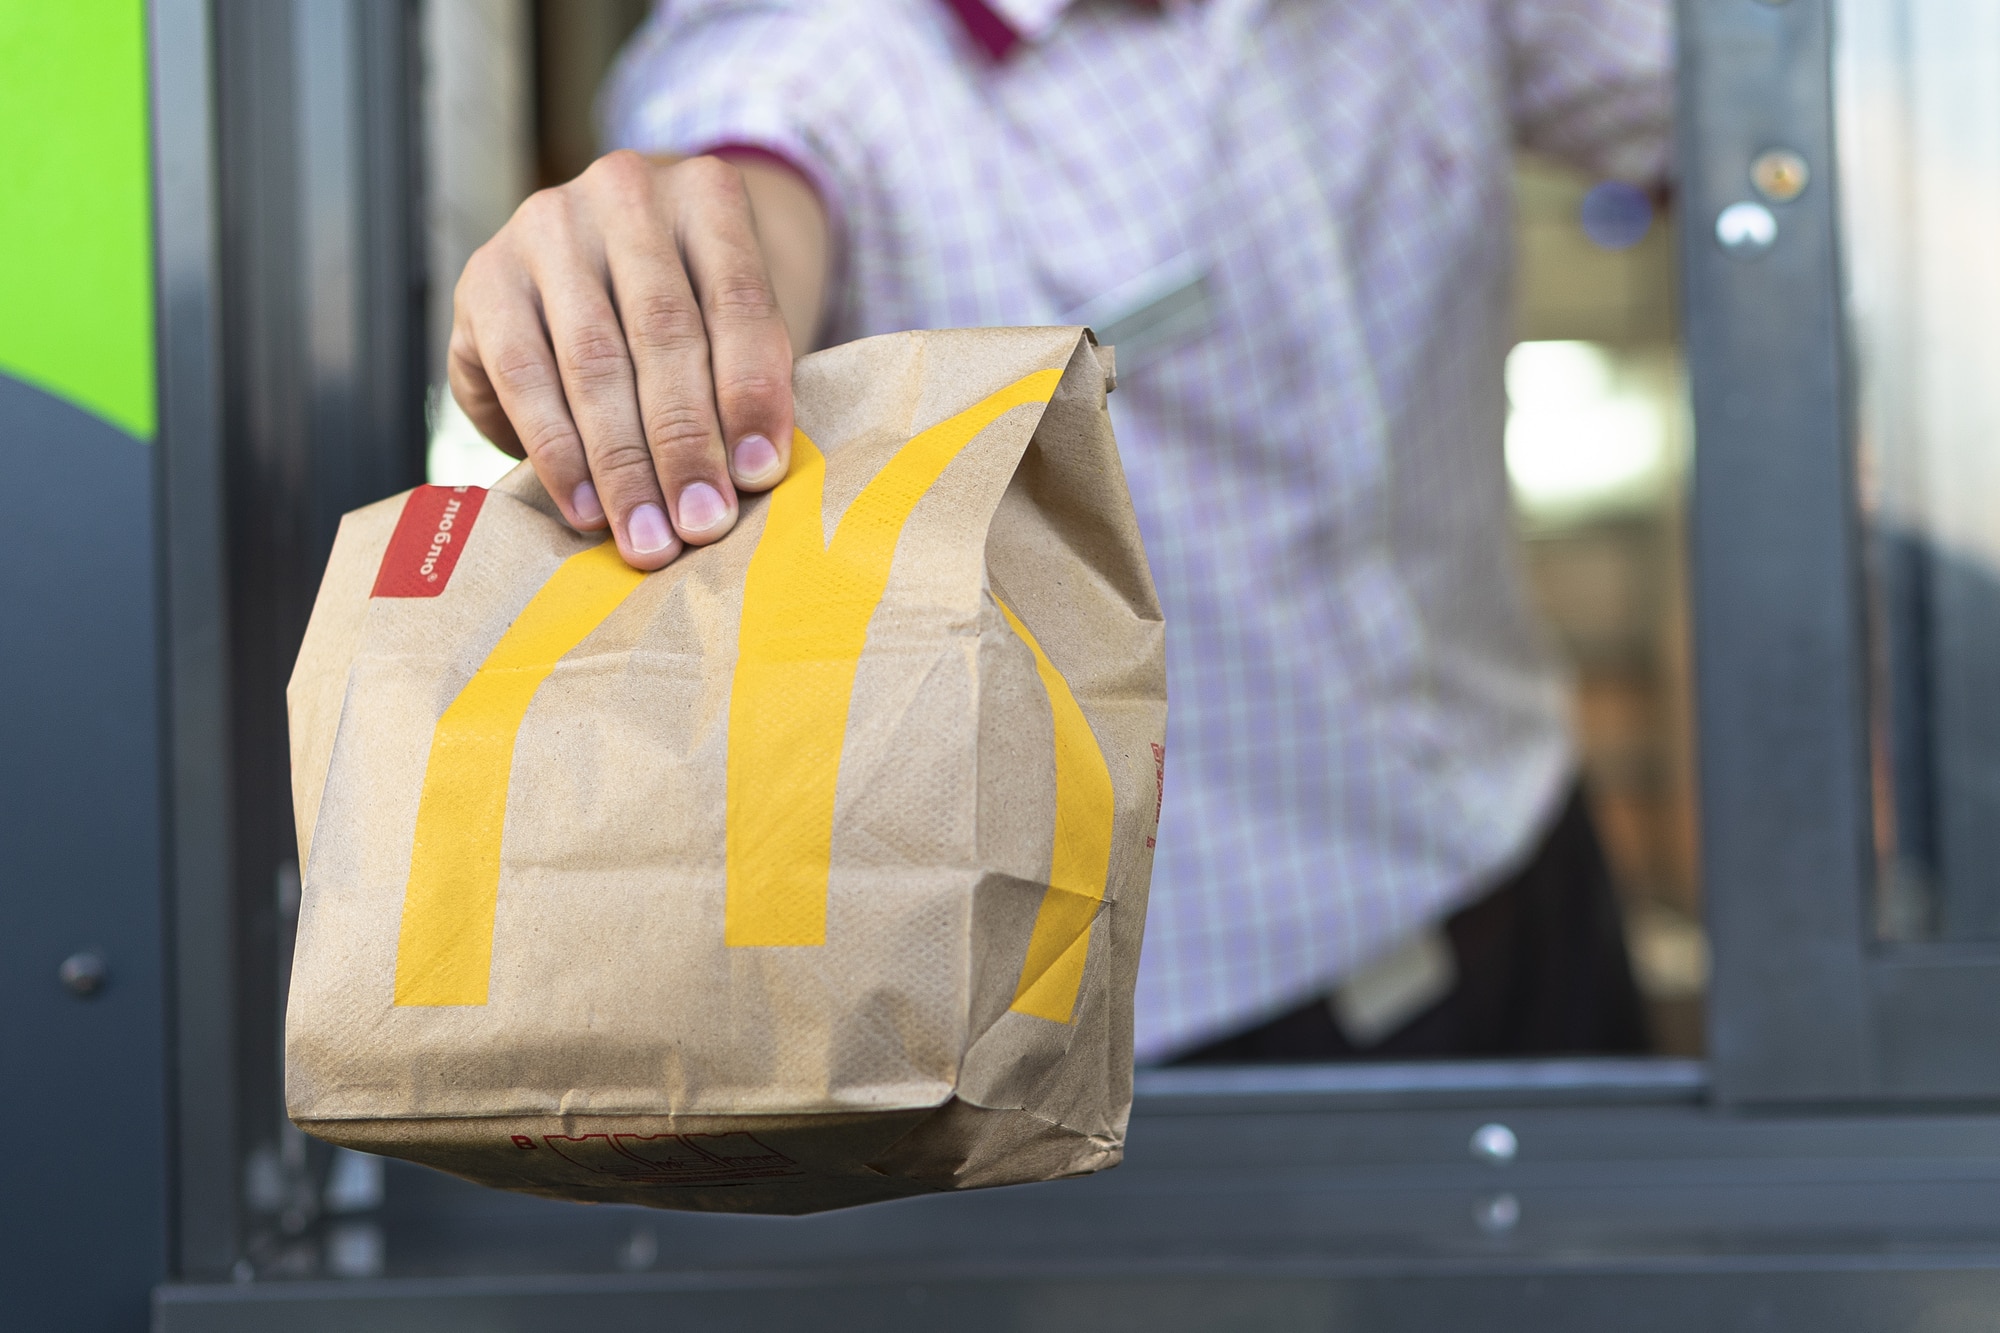 McDo et moi : Le parcours du questionnaire de McDonald’s